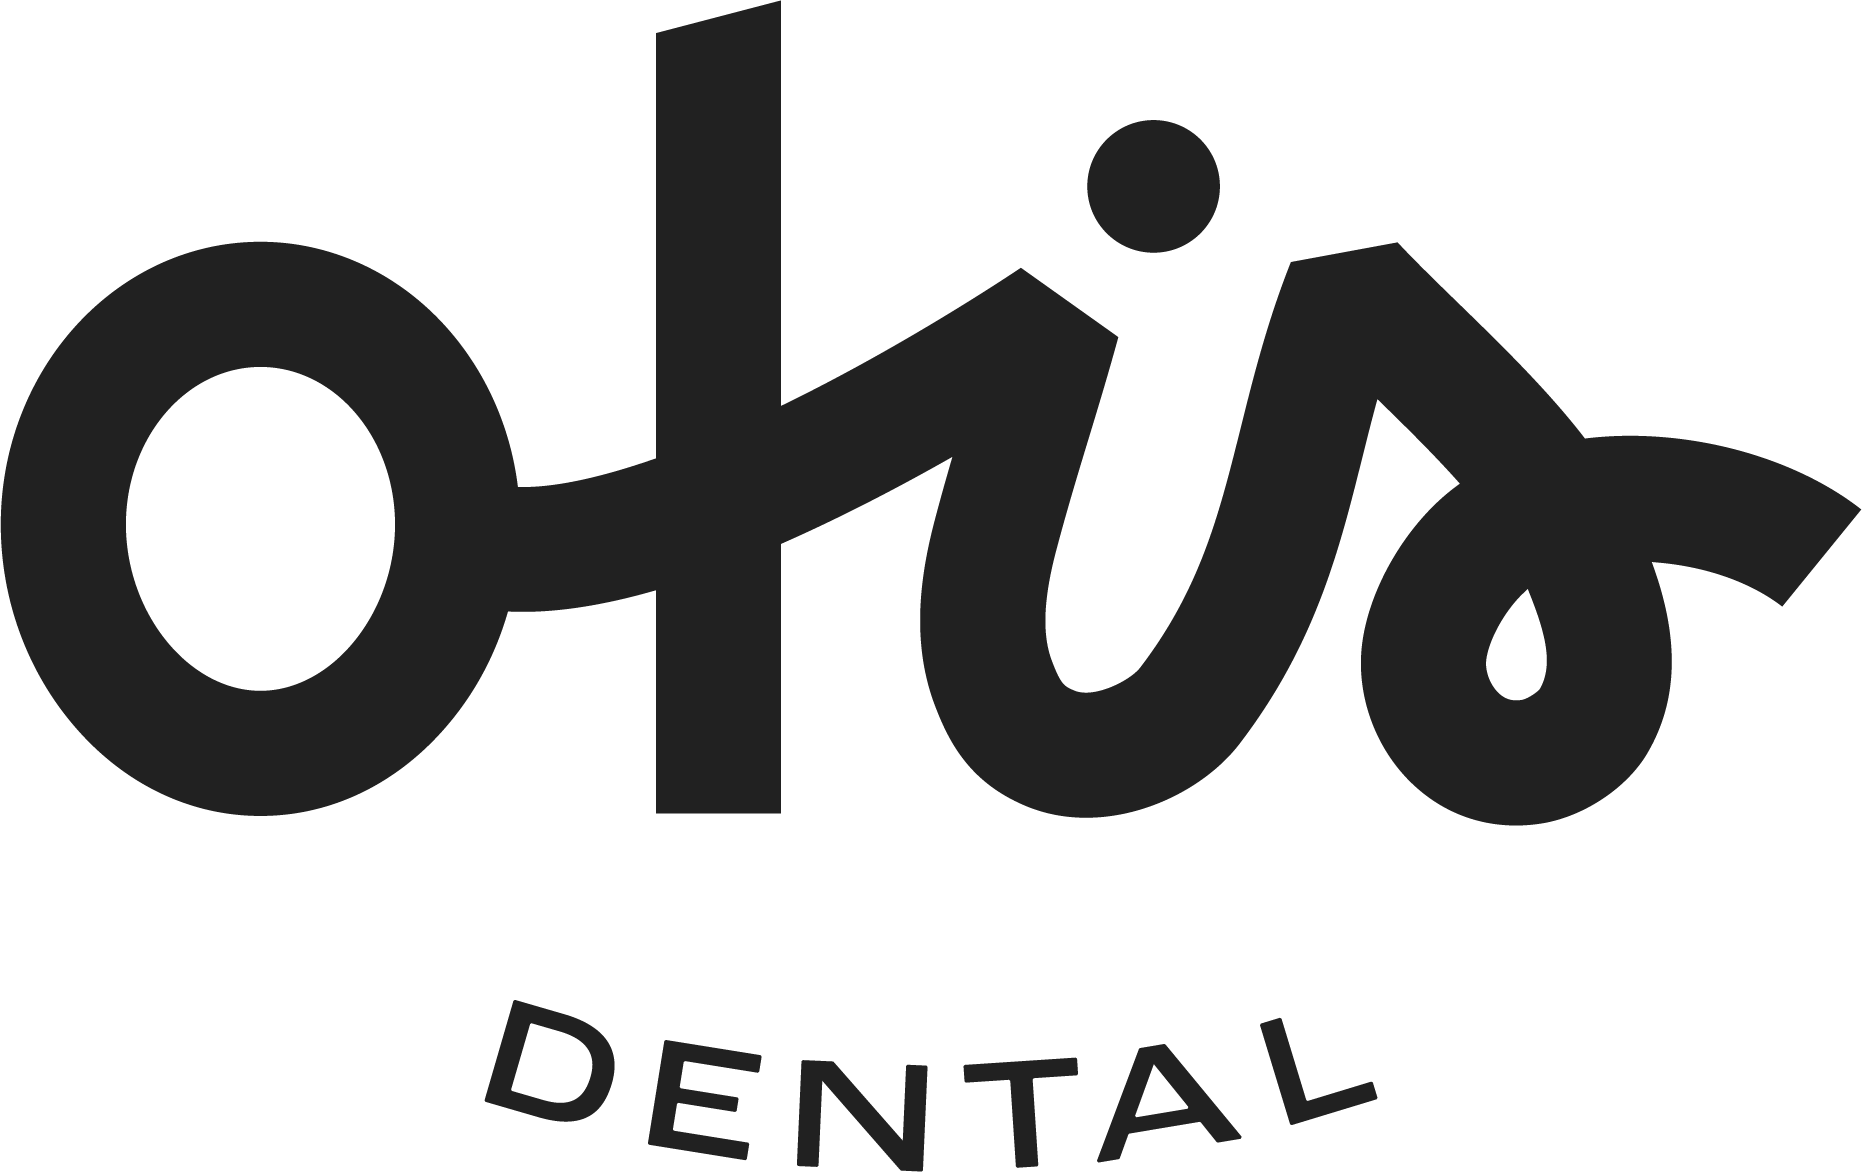 Otis Dental.png